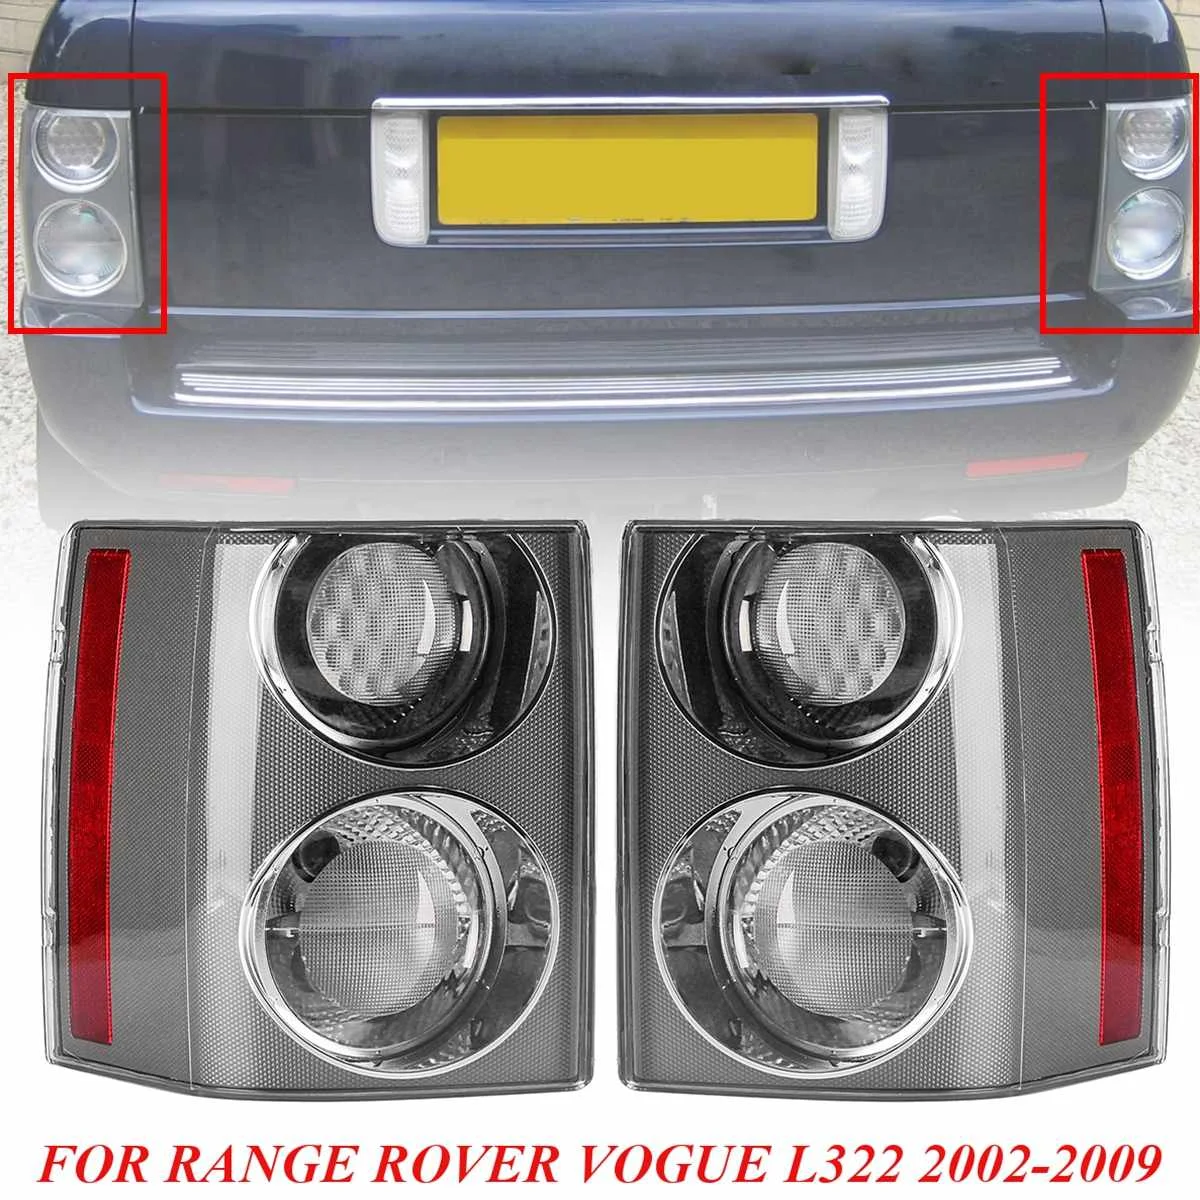 Хвост светильник для Land Rover RANGE ROVER VOGUE L322 2002 2003 2004 2005 2006 2007 2008 2009 хвост светильник задней противотуманной фары Drl заднего хода